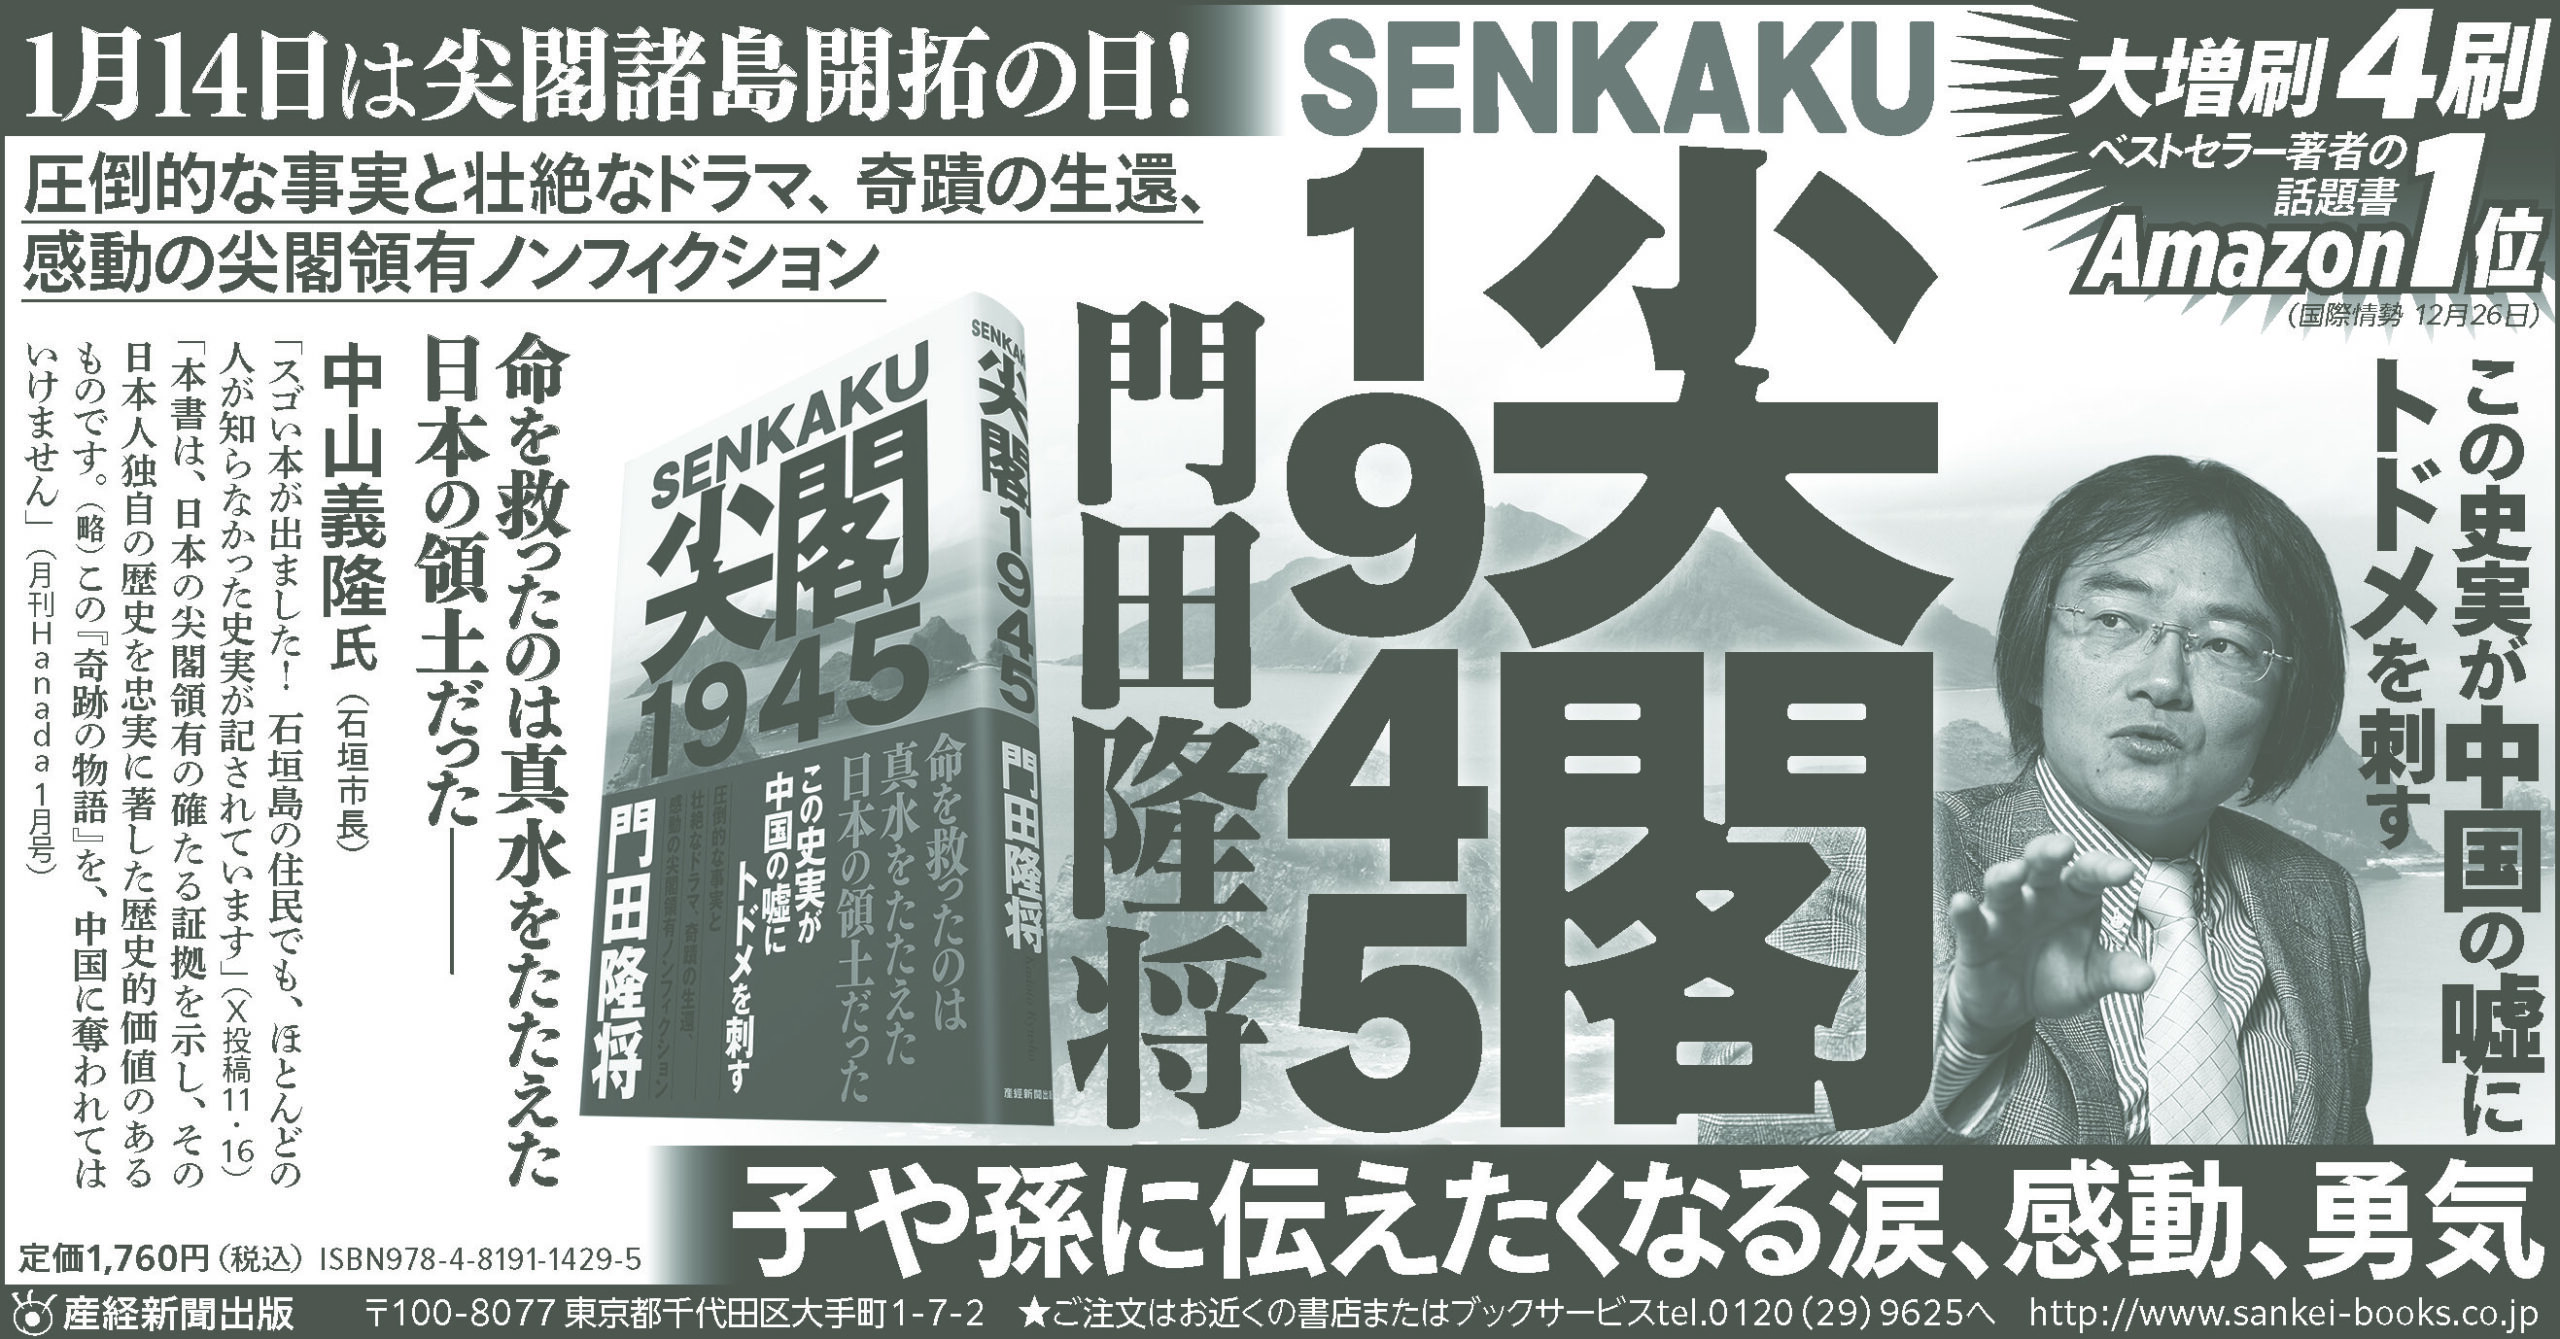 門田隆将氏の新刊「尖閣1945」、八重山毎日新聞が広告掲載拒否